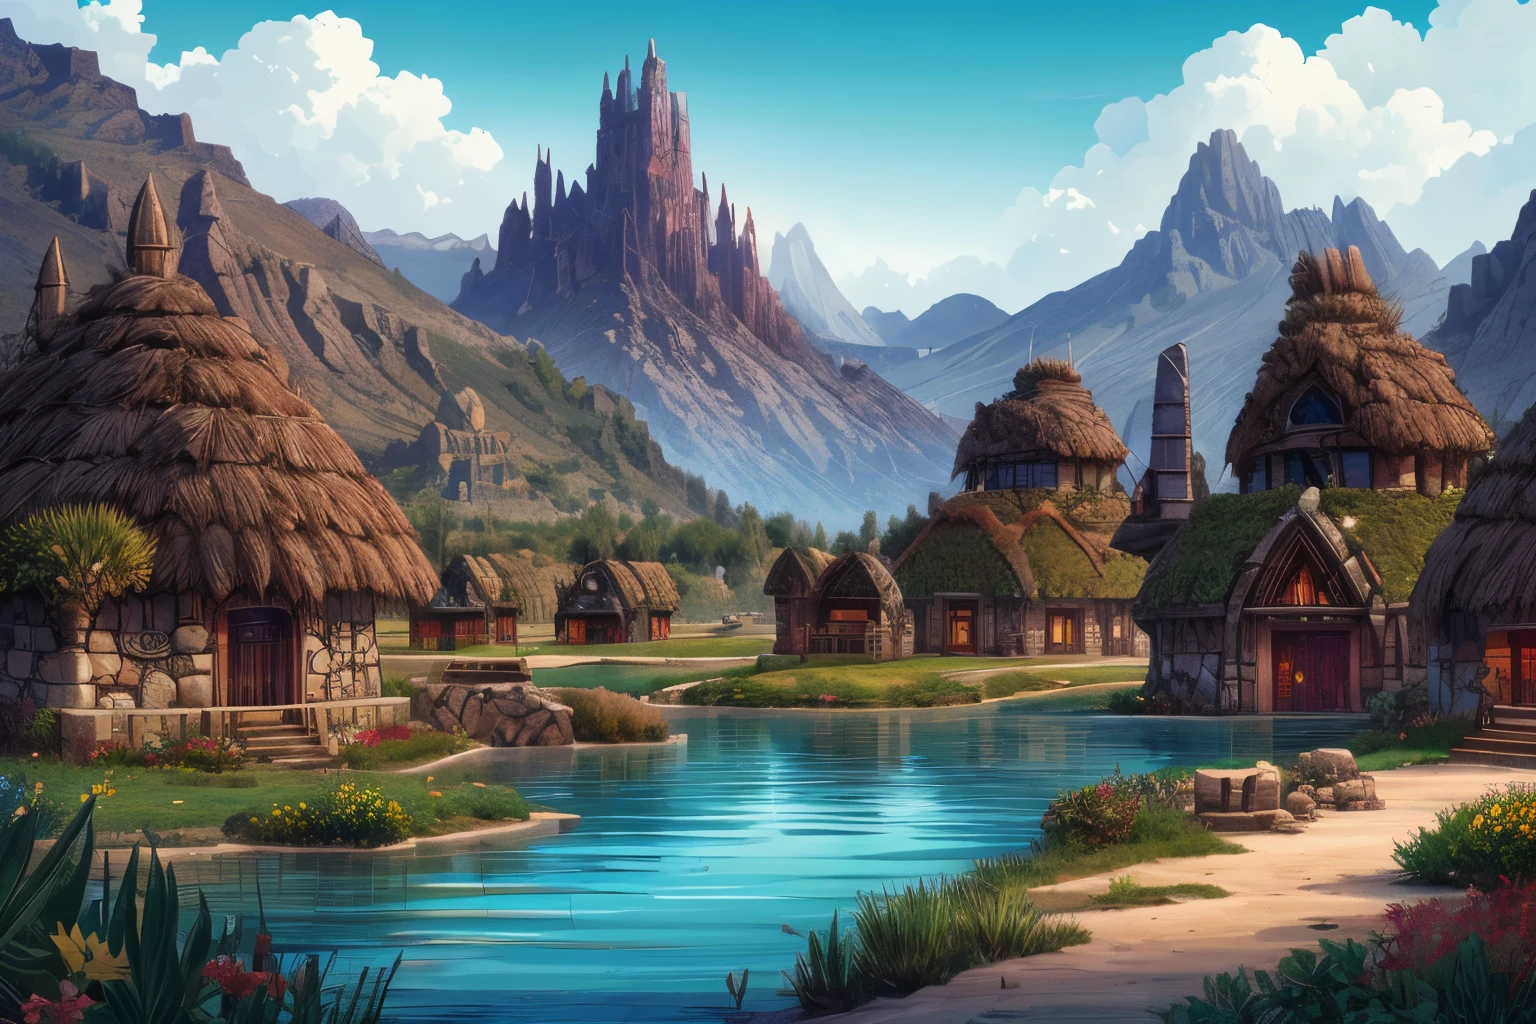 pueblo bárbaro nómadas, edificios de orcos bárbaros, fantasía de poder épica, oasis del lago floreciendo, paisaje desértico de montañas